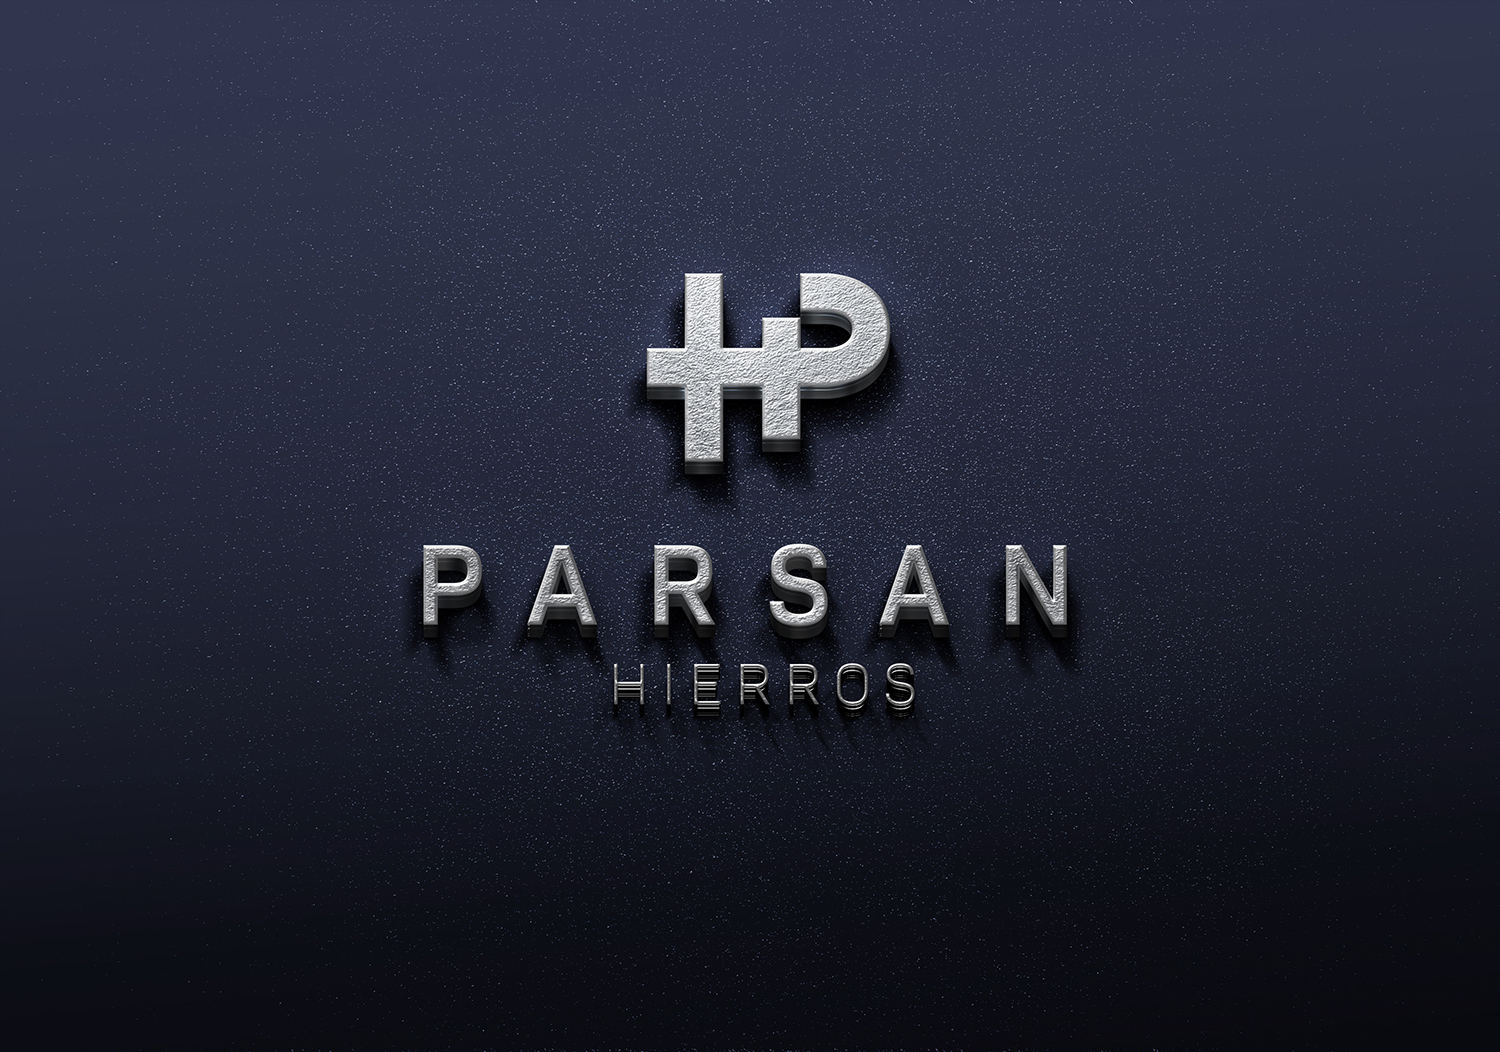 HIERRO-PARSAN.jpg